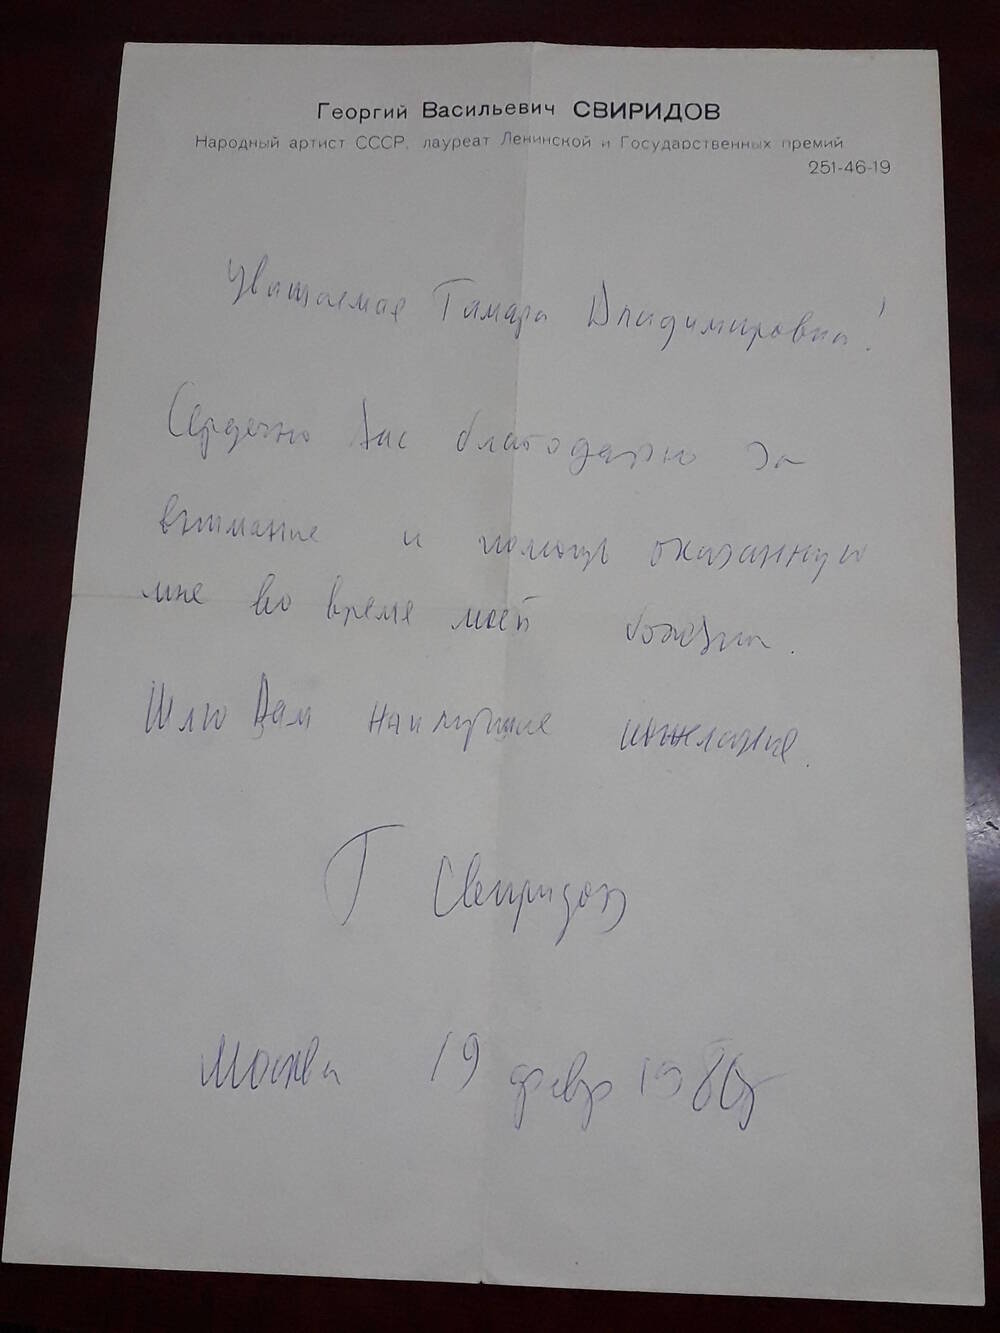 Письмо Чистяковой Тамаре Владимировне от Свиридова Георгия Васильевича